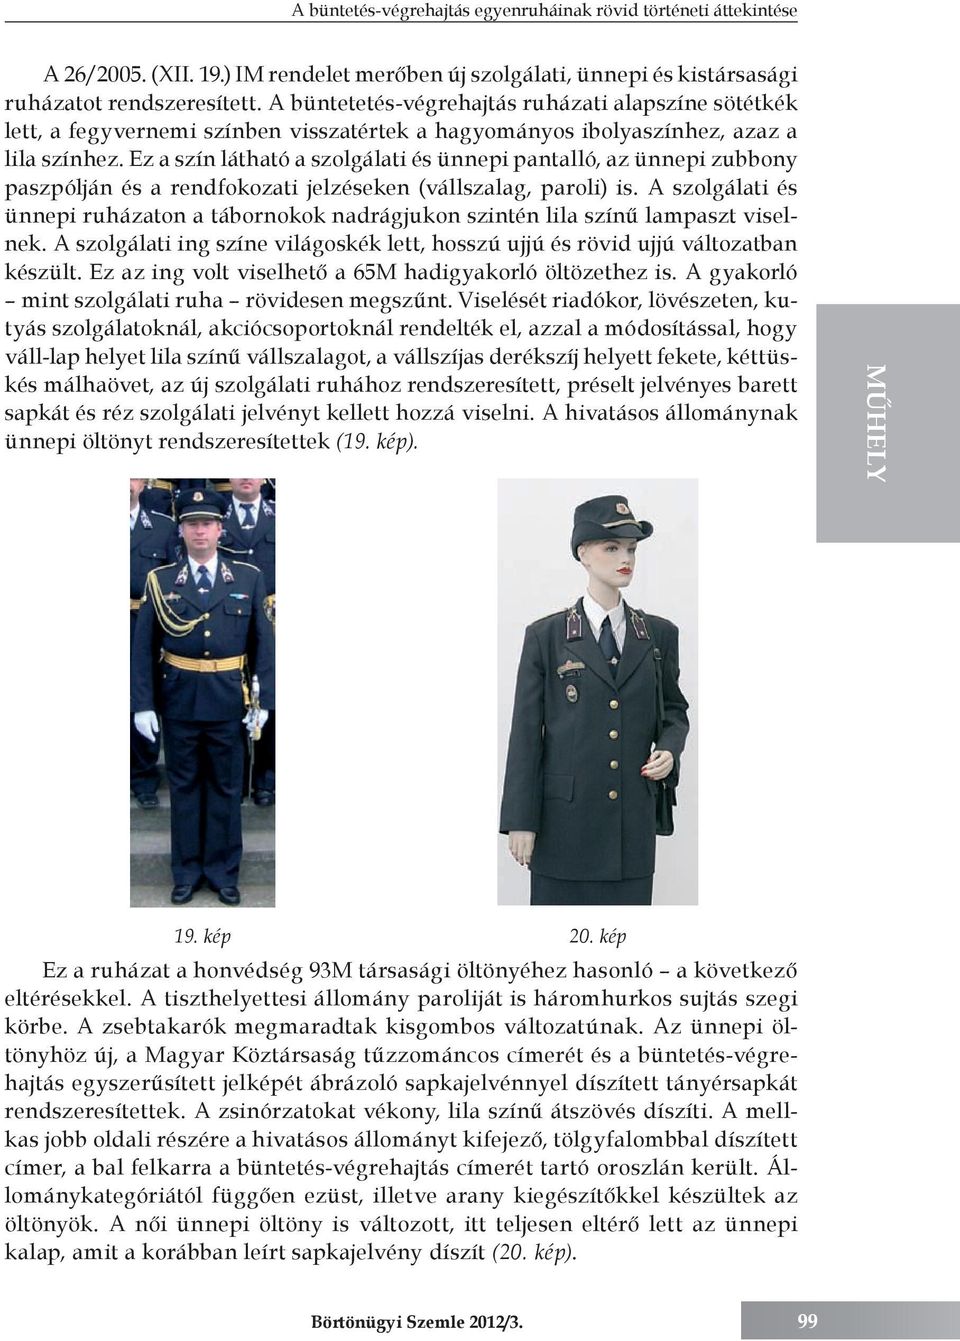 A büntetés-végrehajtás egyenruháinak rövid történeti áttekintése - PDF  Ingyenes letöltés